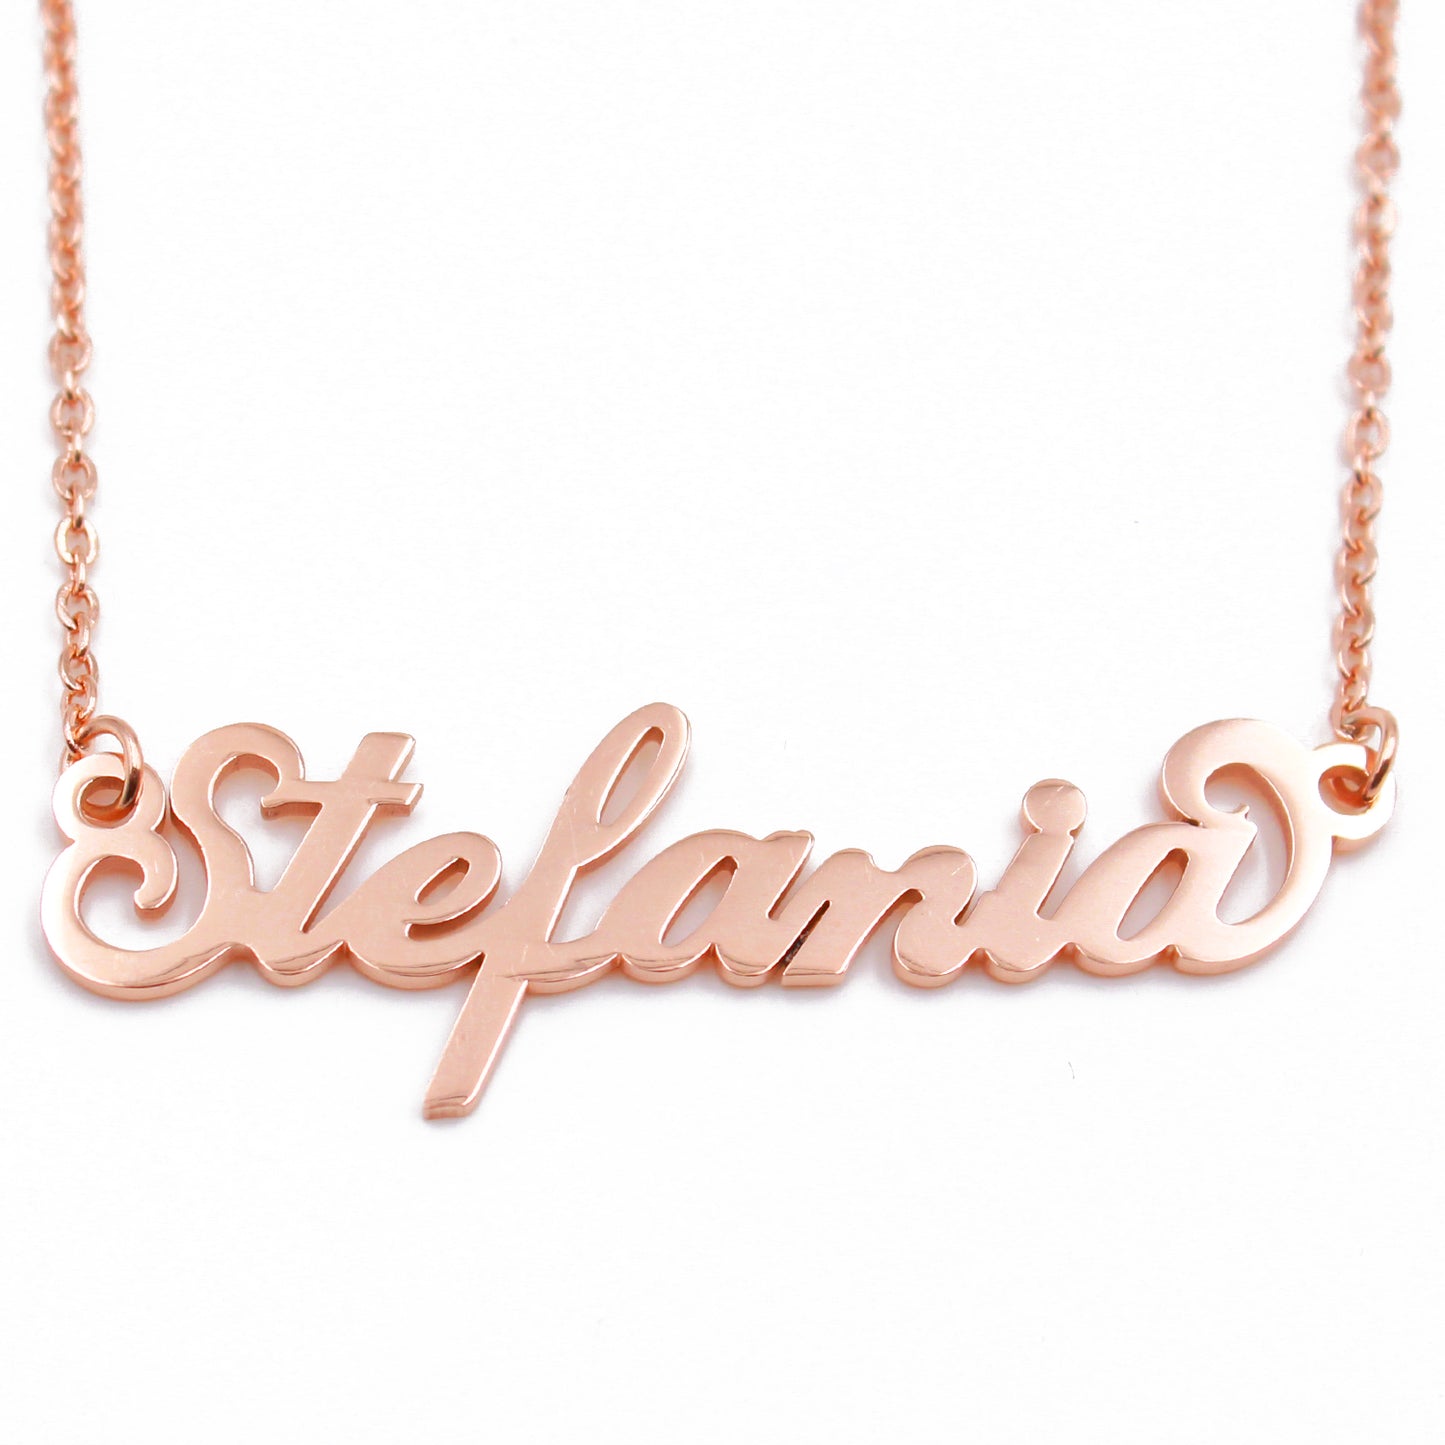 Stefania Name Necklace - Italic Style